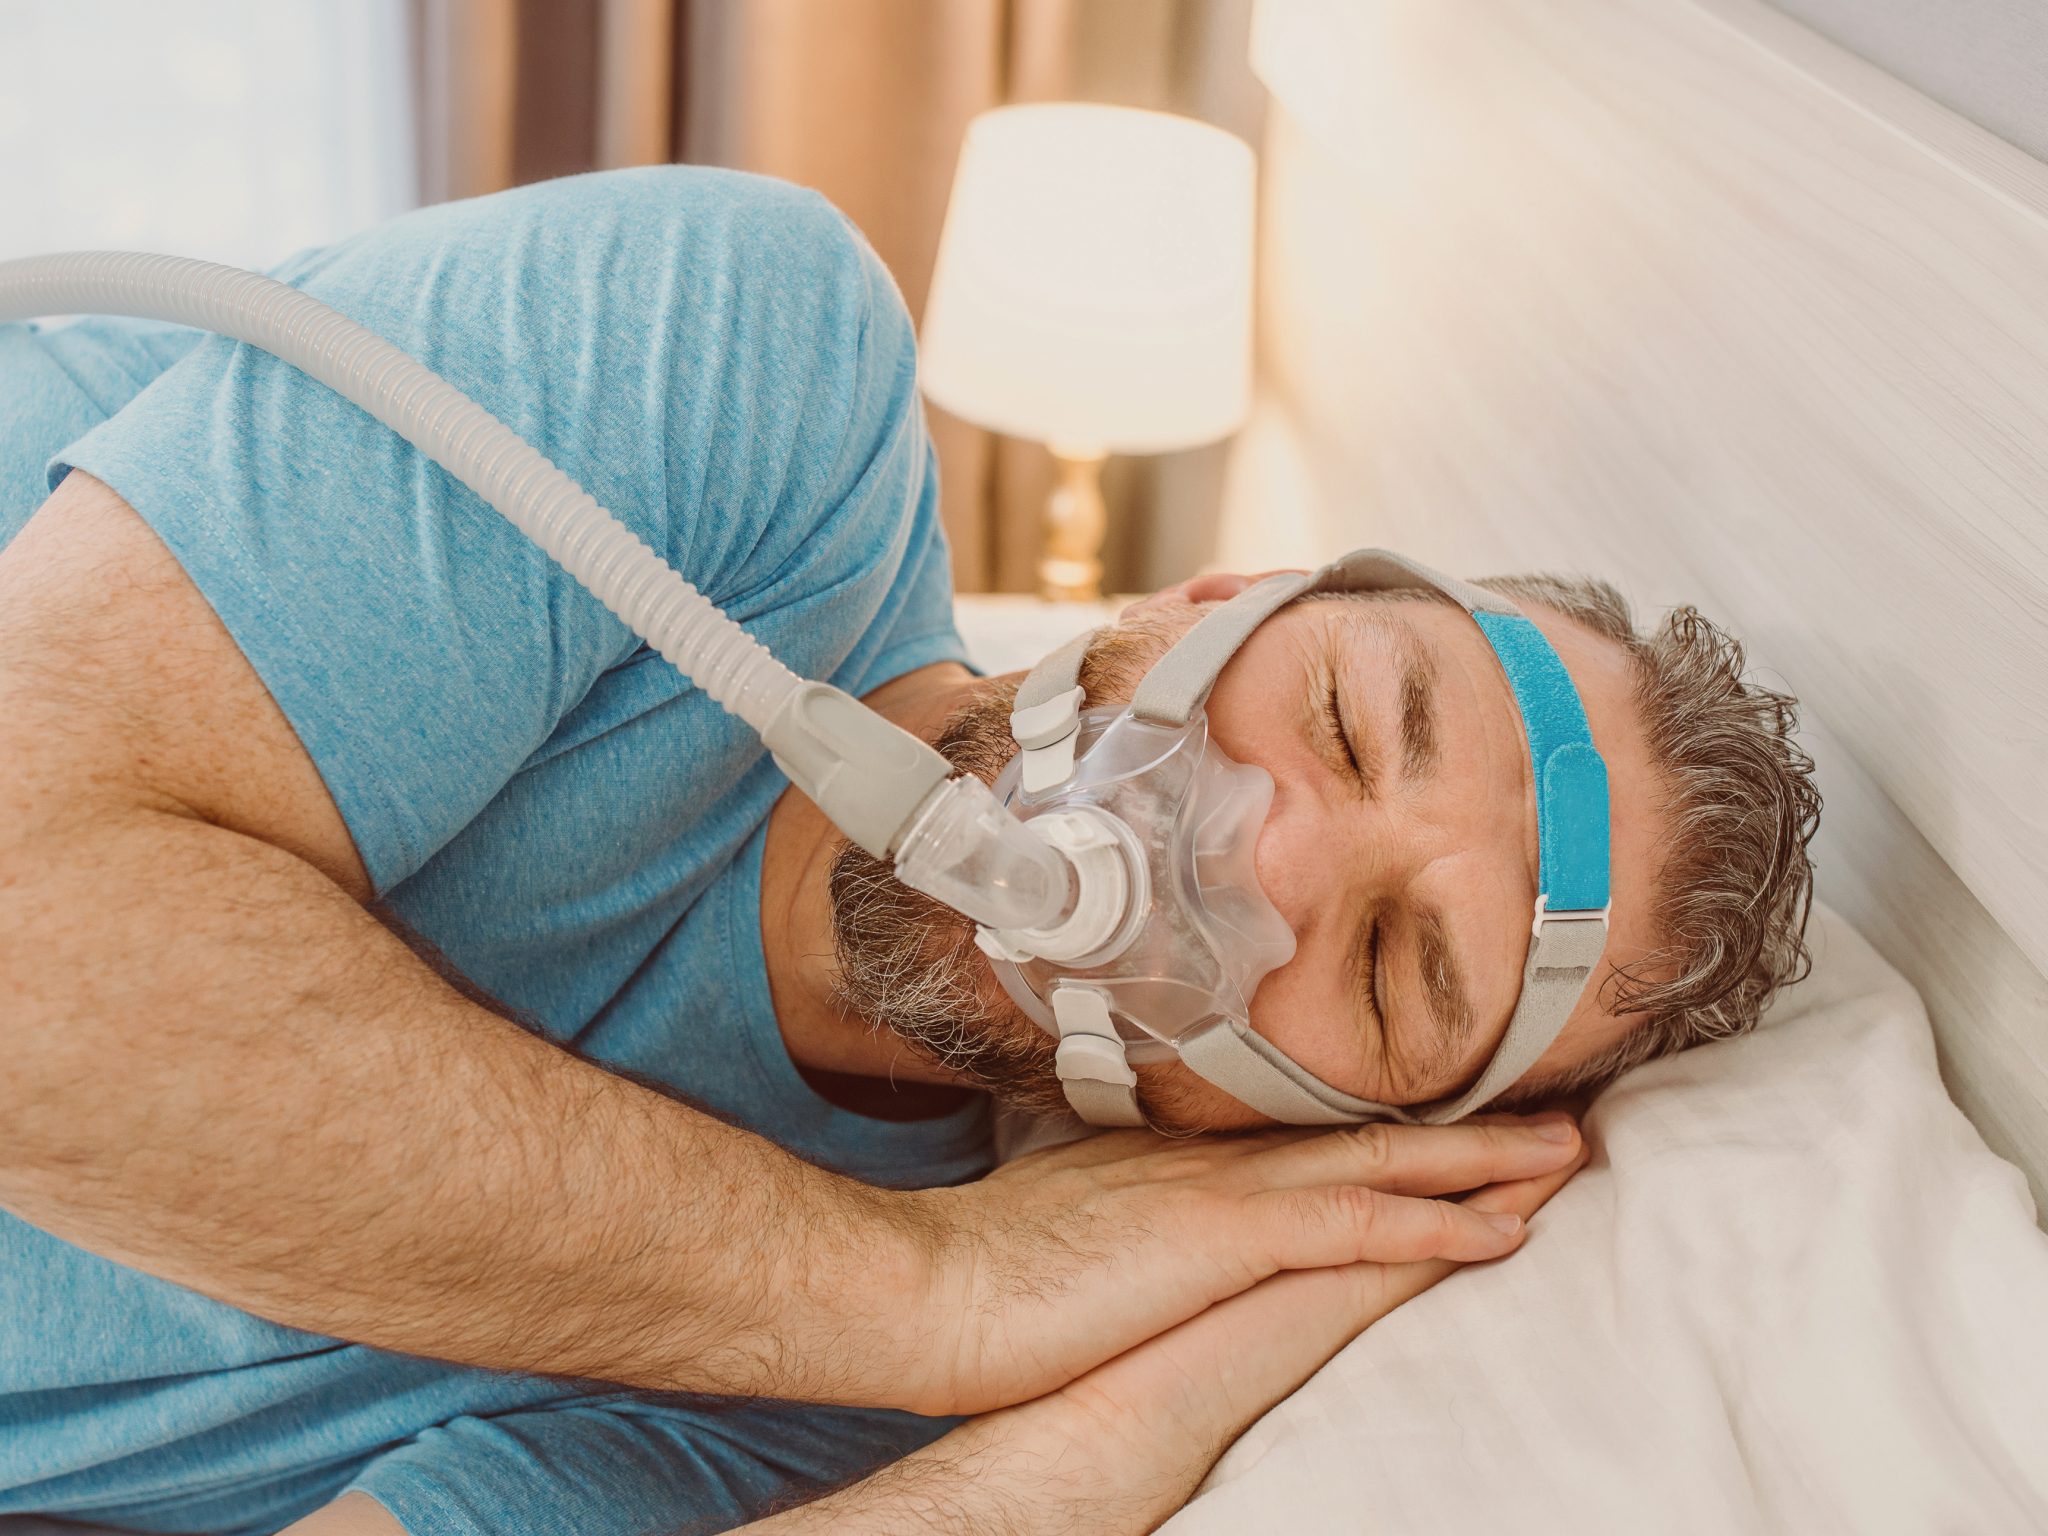 man with sleep apnea